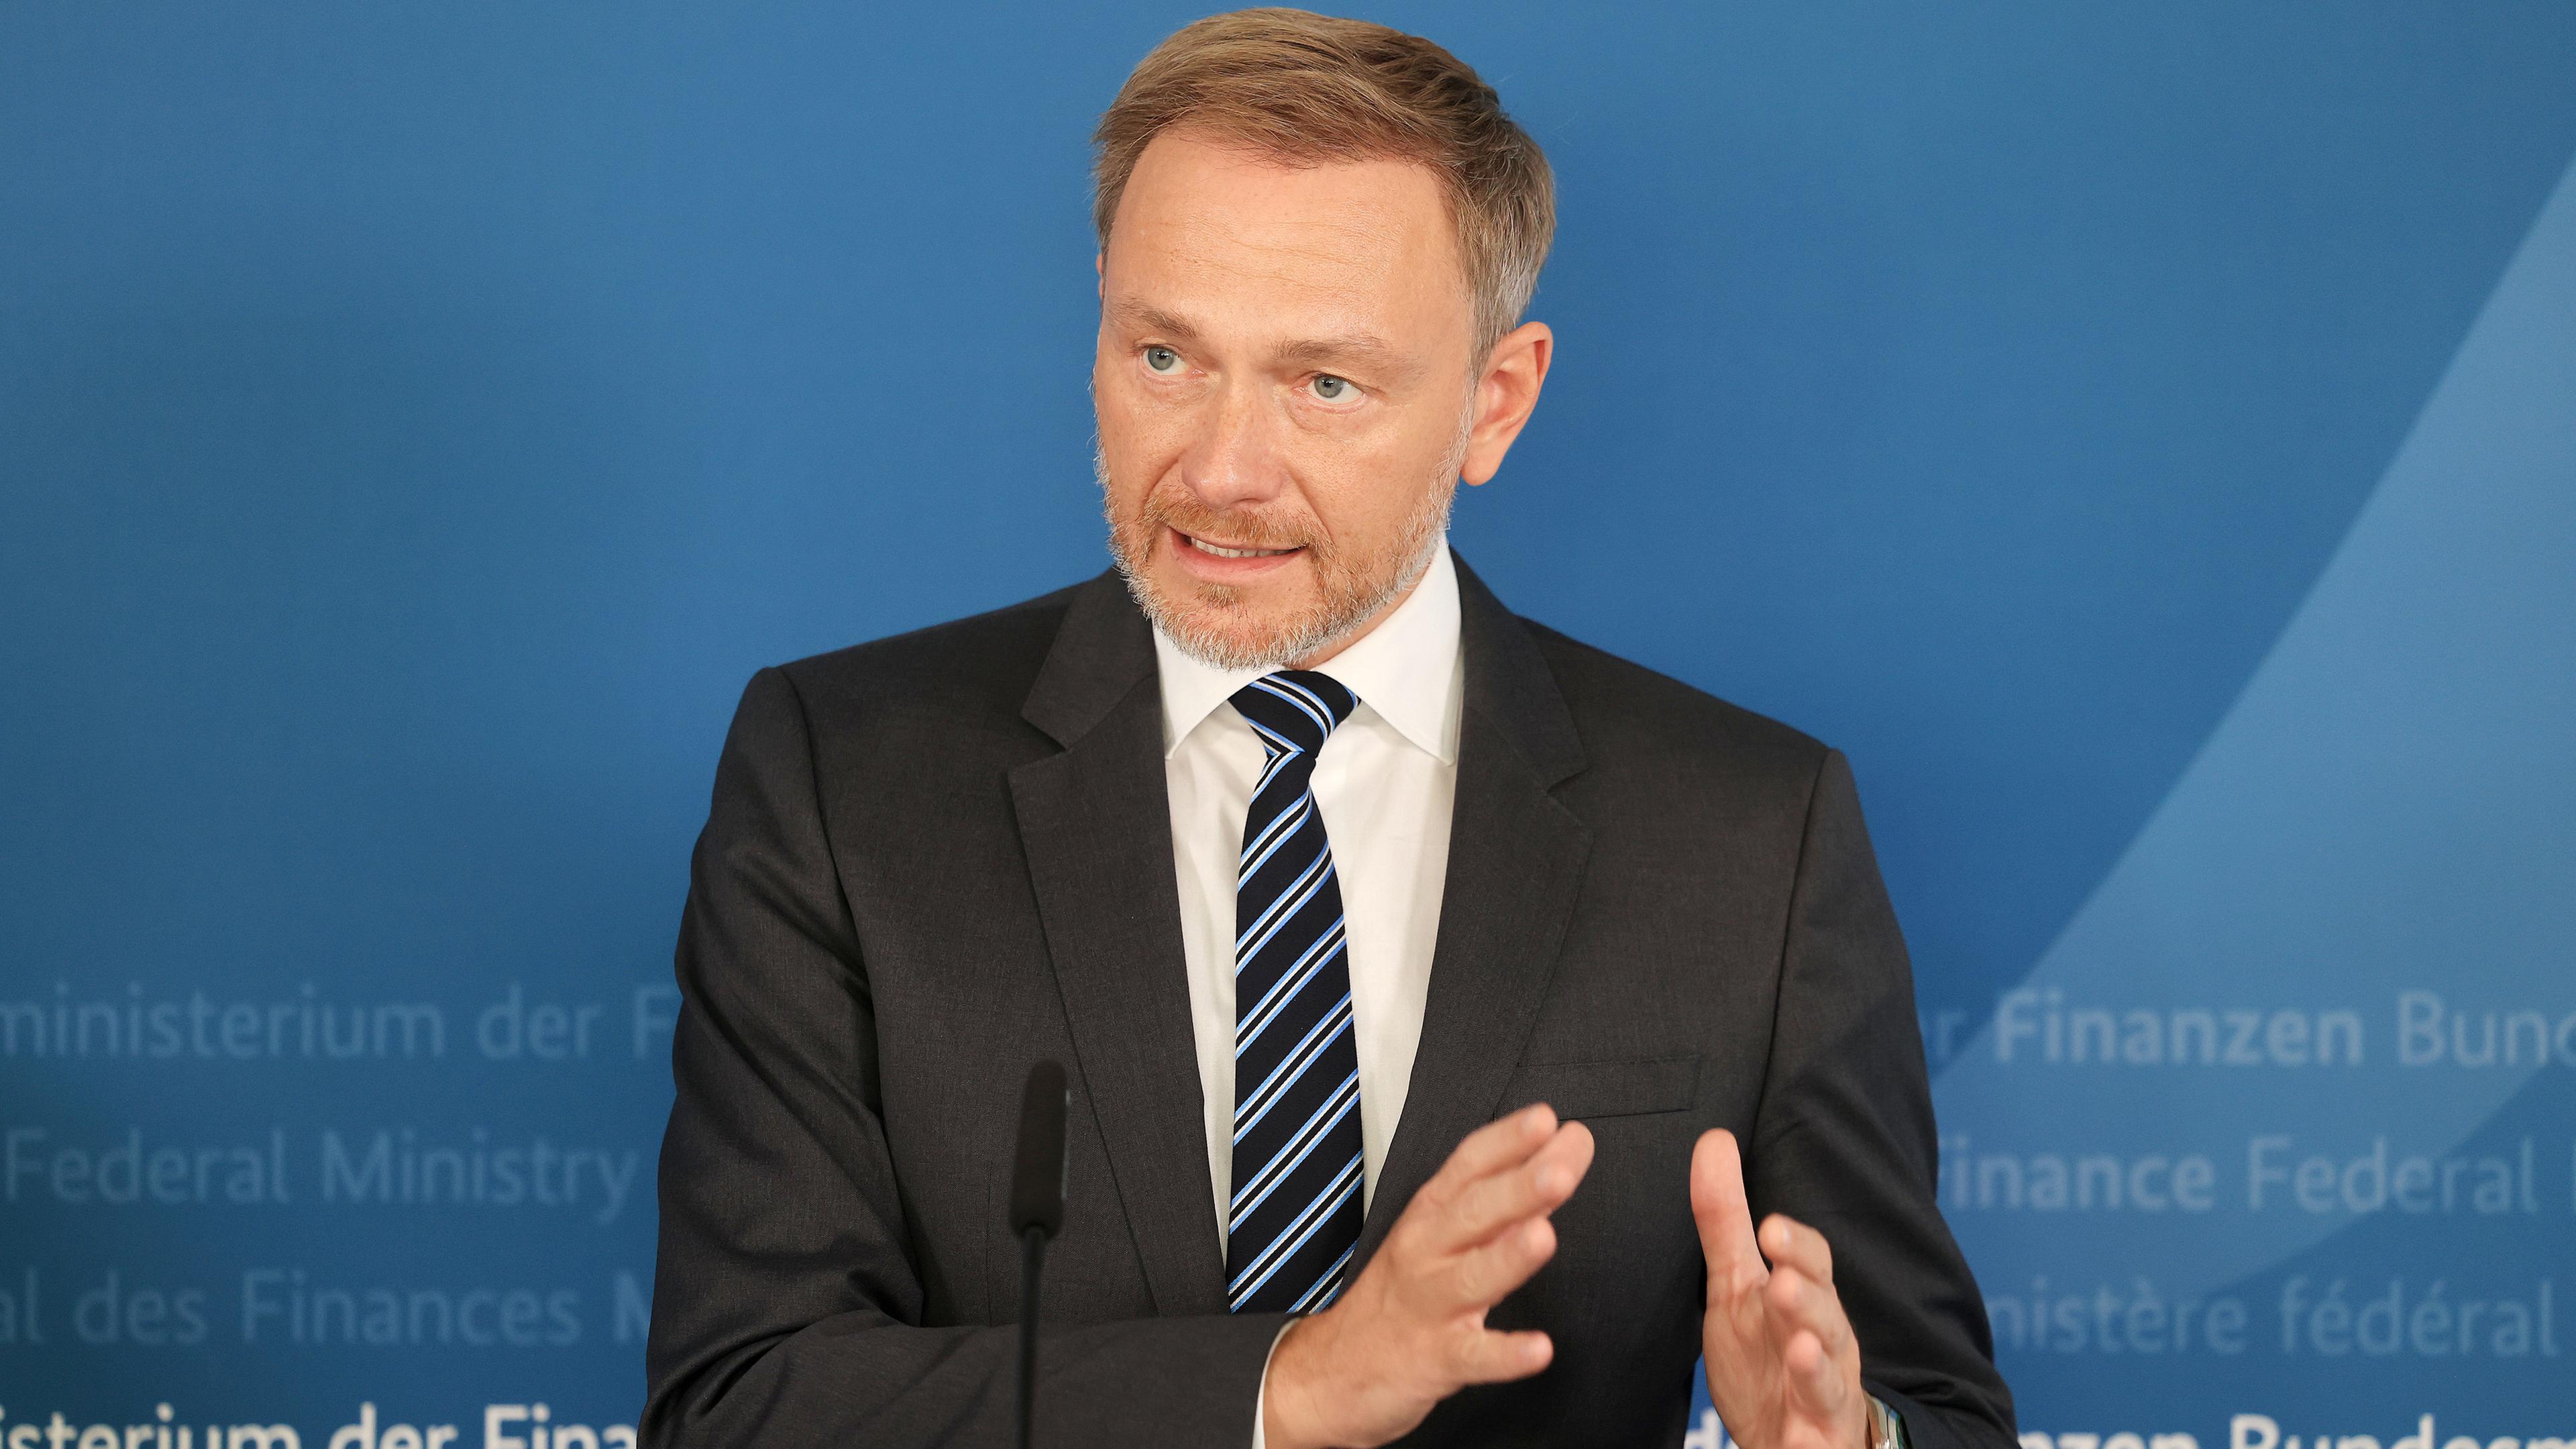 Christian Lindner, Bundesfinanzminister stellt das Ergebnis der Herbst-Steuerschätzung vor.